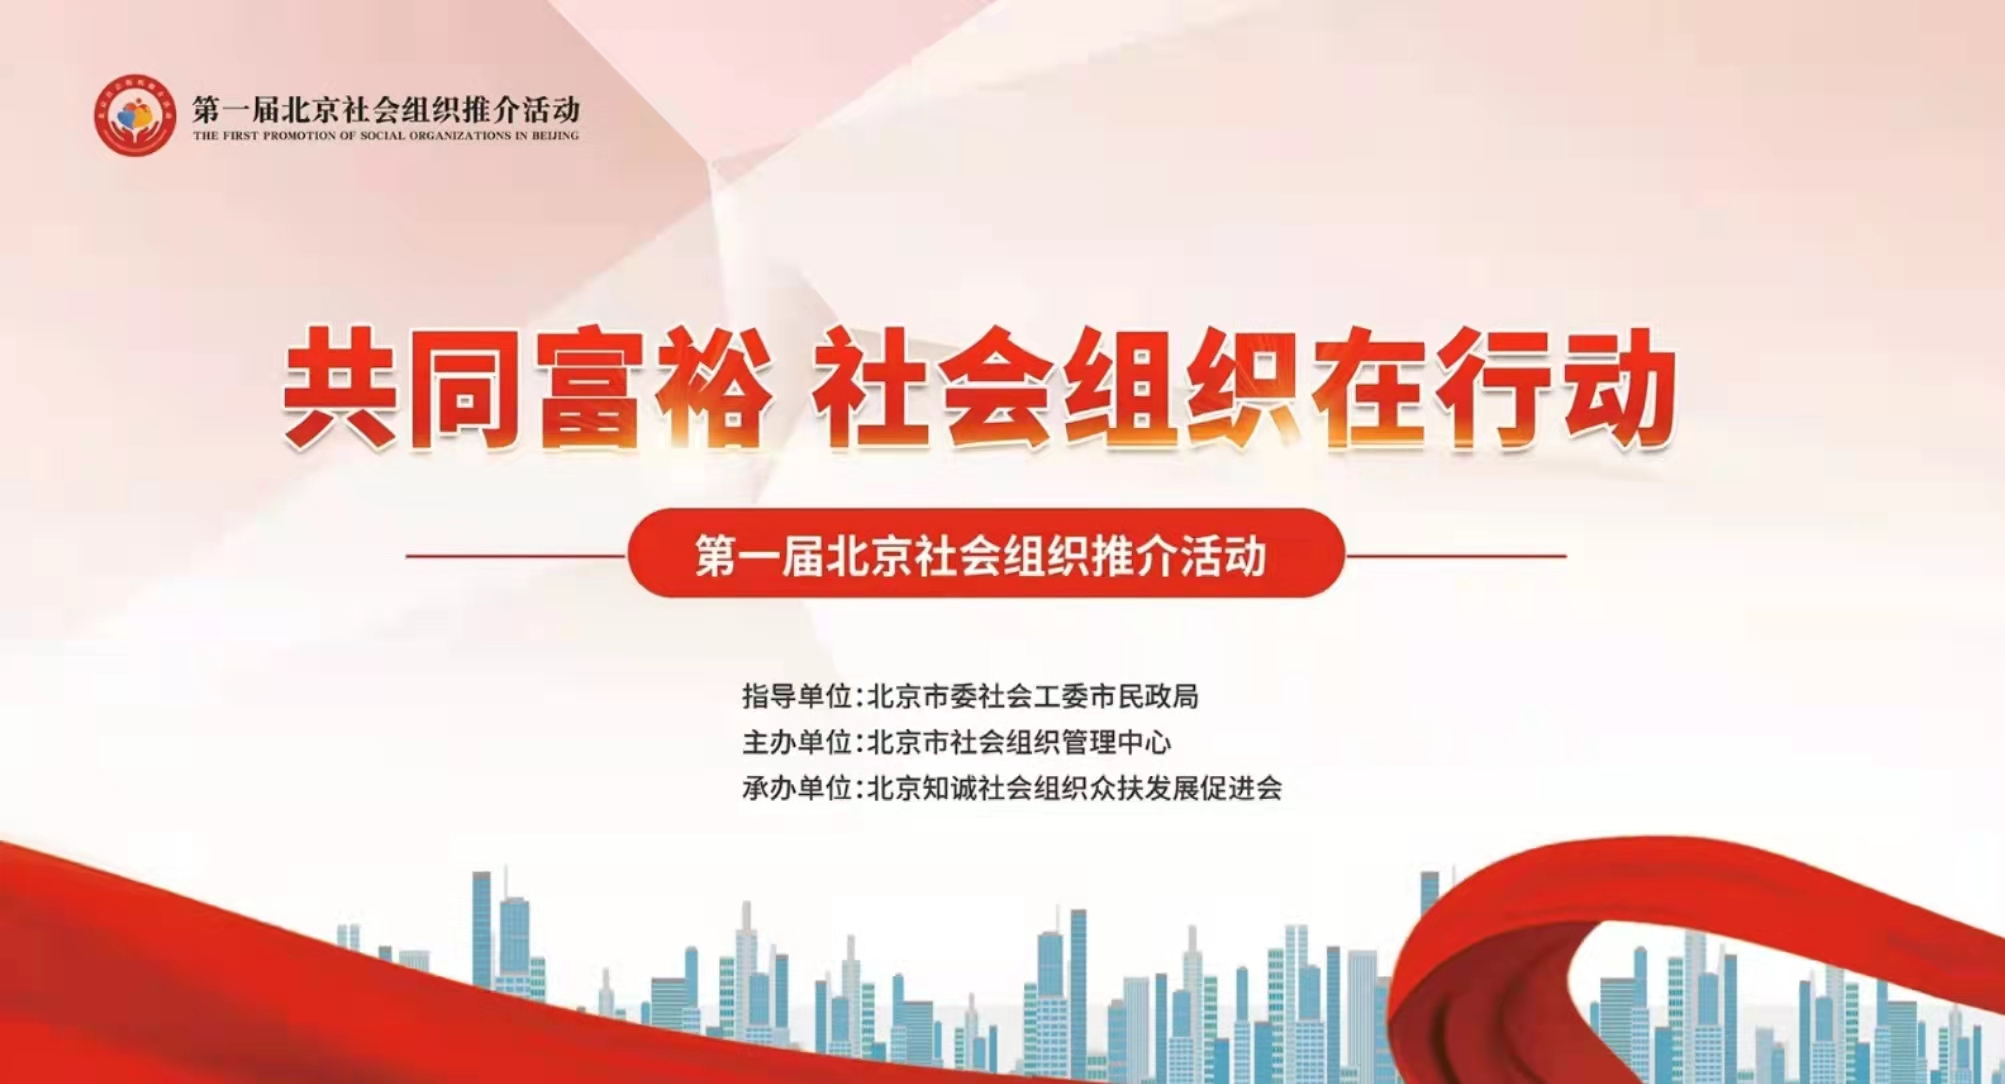 八方体育娱乐 v2.71参加第一届北京社会组织推介活动